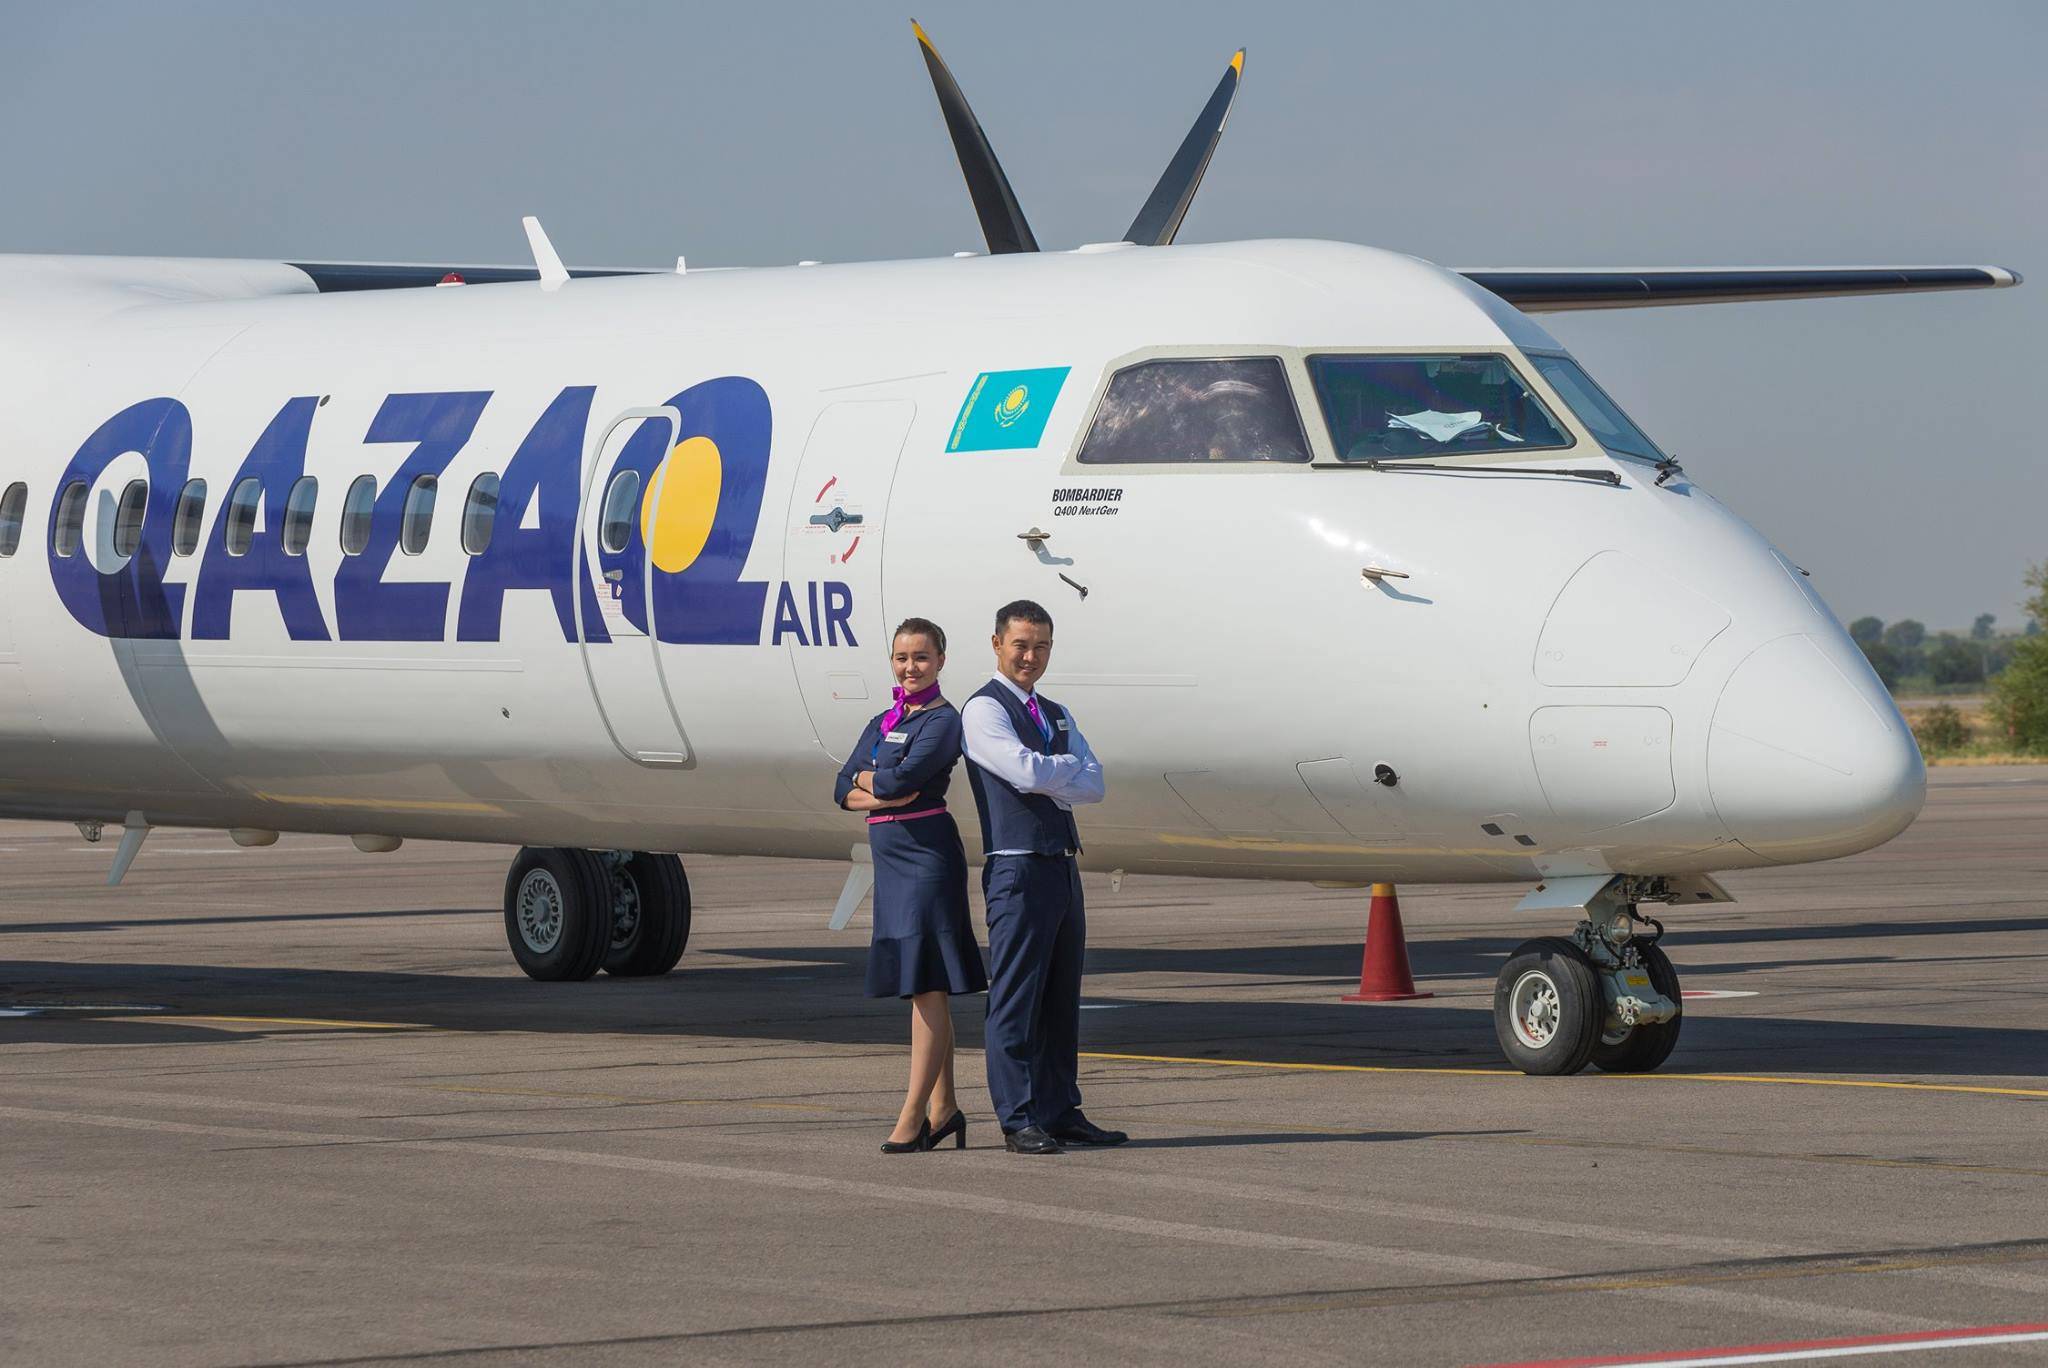 Казахстанская авиакомпания — лоукостер Казах Эйр (Qazaq Air)